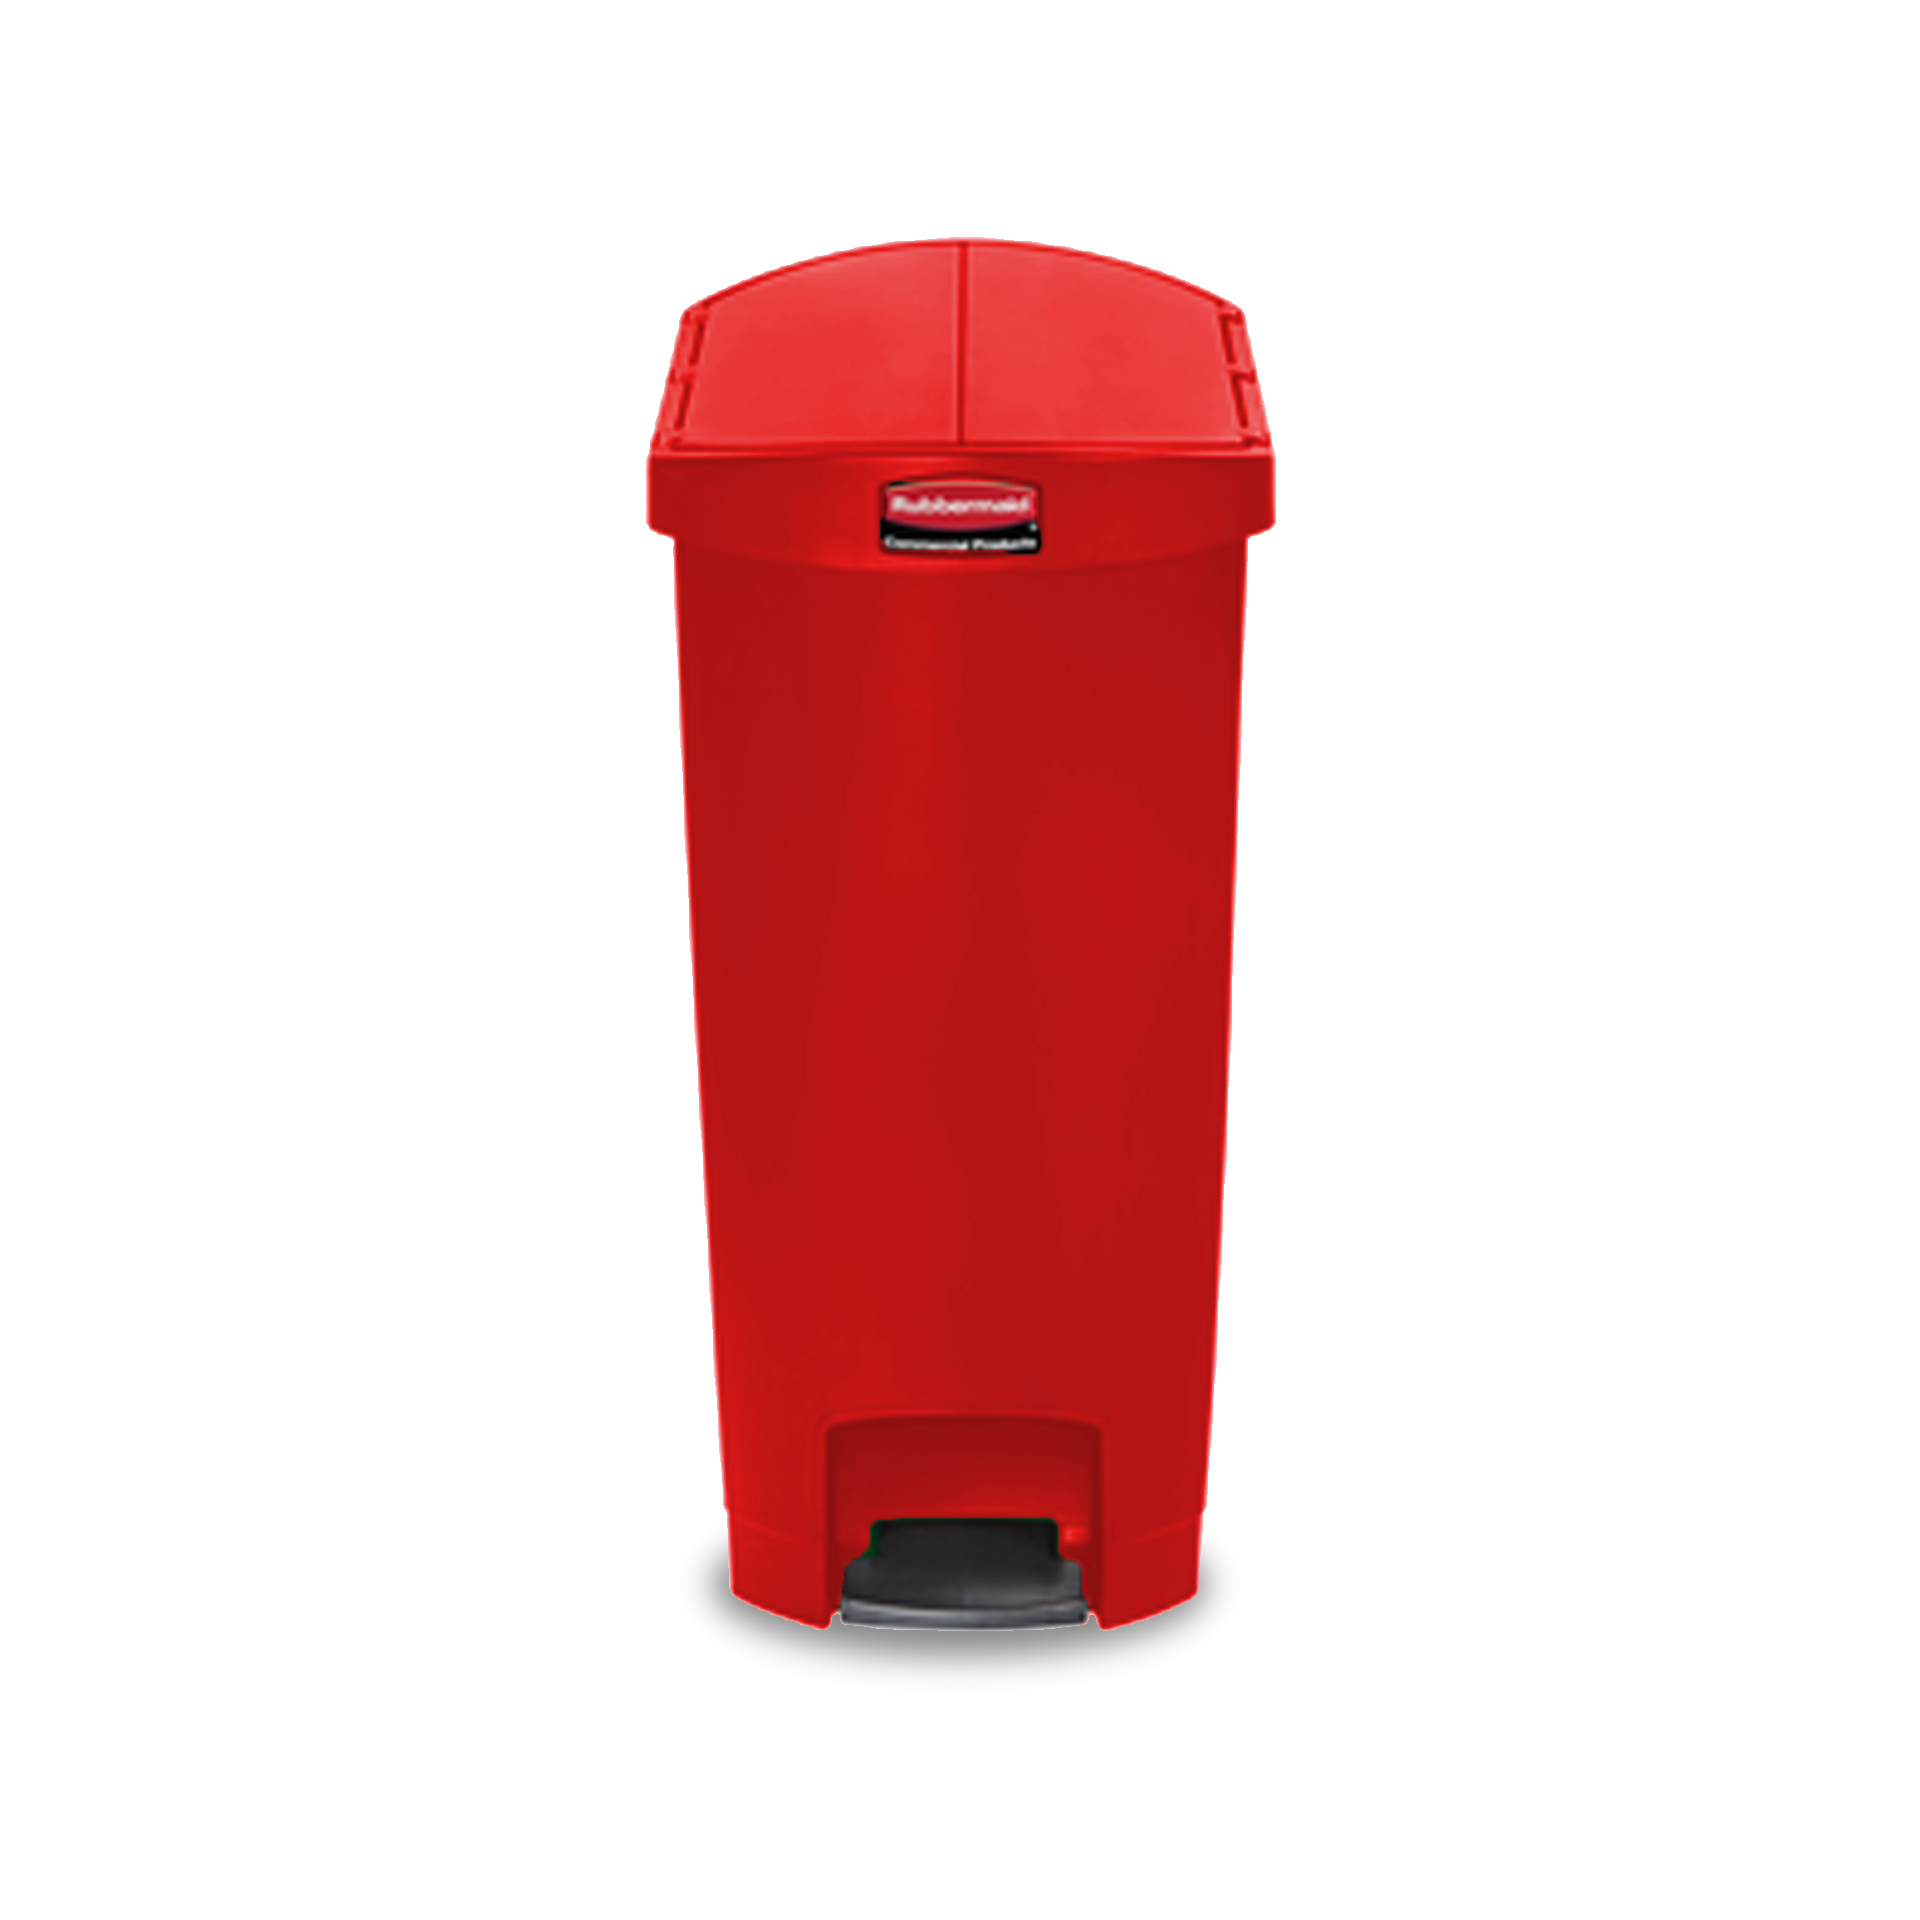 ถังขยะแบบเท้าเหยียบ ฝาถังเปิด 2 ด้าน Slim Jim® Step-On Container ขนาด 50 ลิตร สีแดง